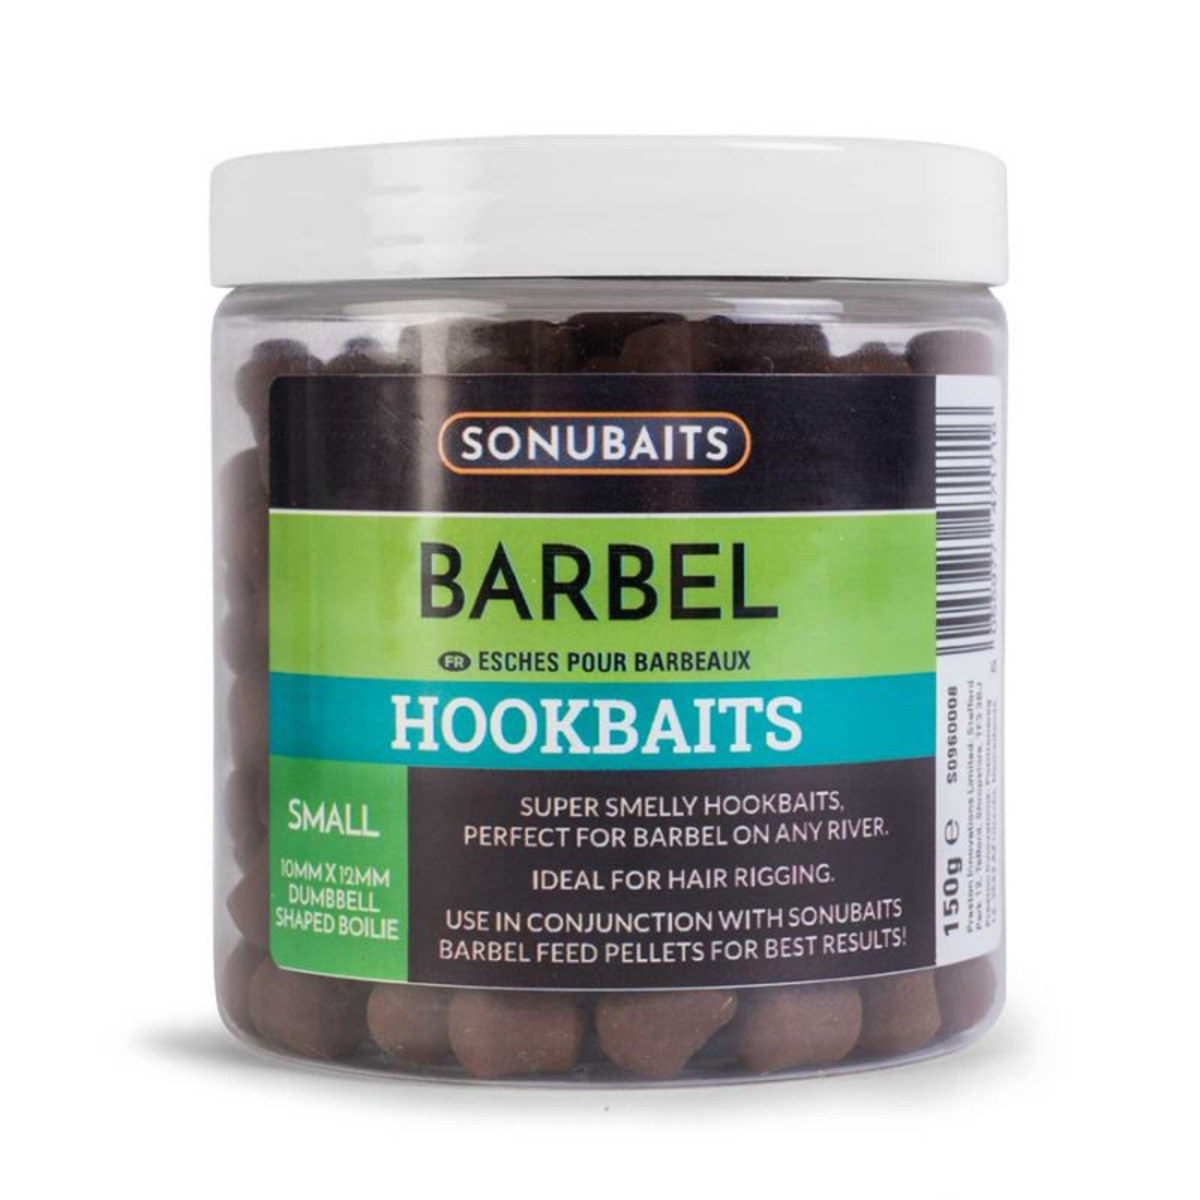 Sonubaits Barbel Hookbaits - Small